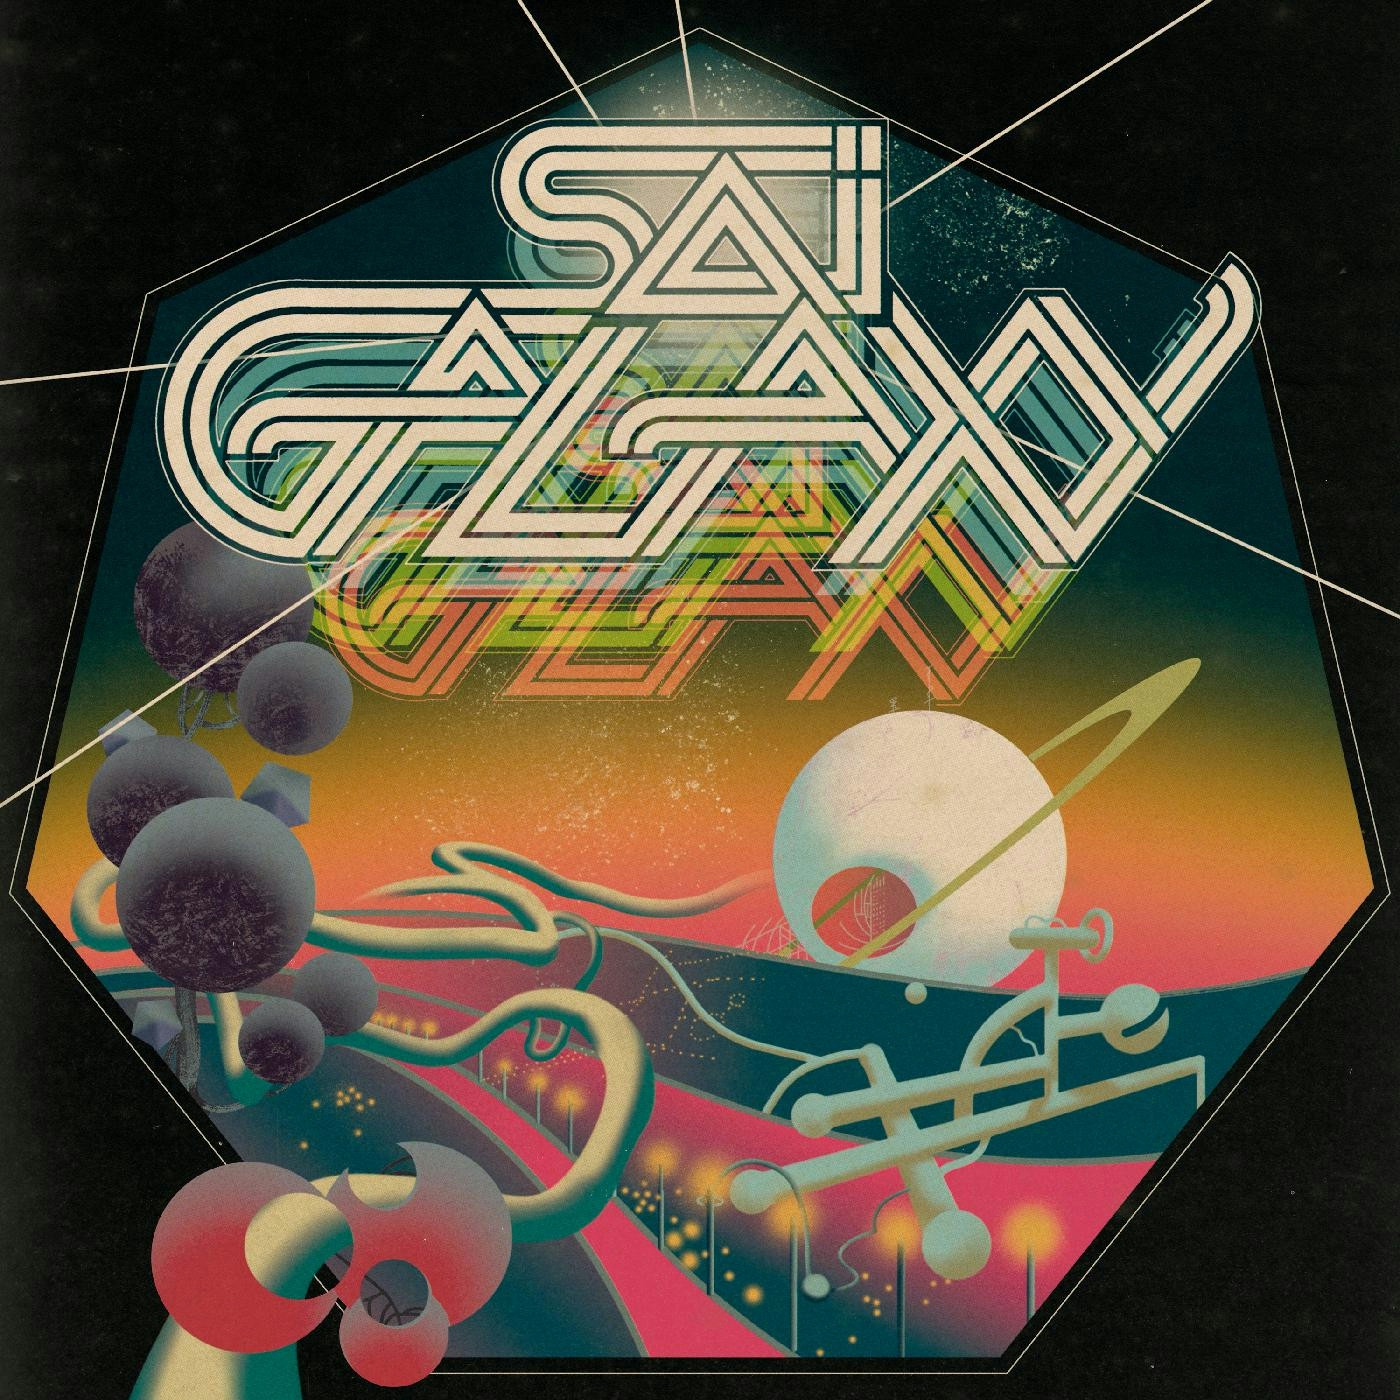 Album artwork for Album artwork for Get It As You Move by Sai Galaxy by Get It As You Move - Sai Galaxy